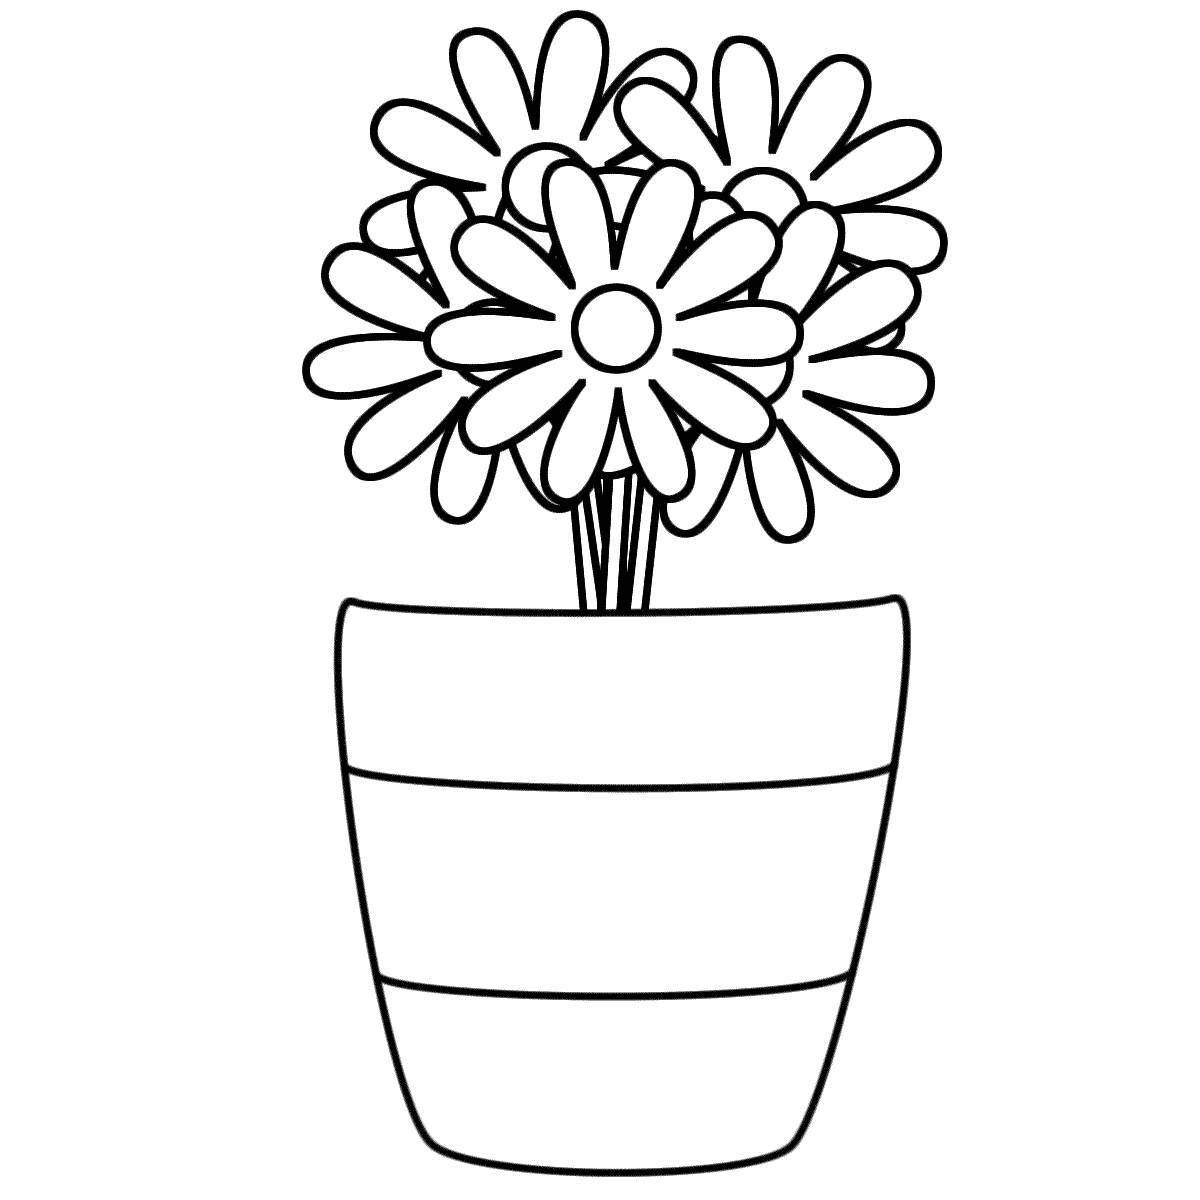 Joyful flower vase for children 3-4 years old